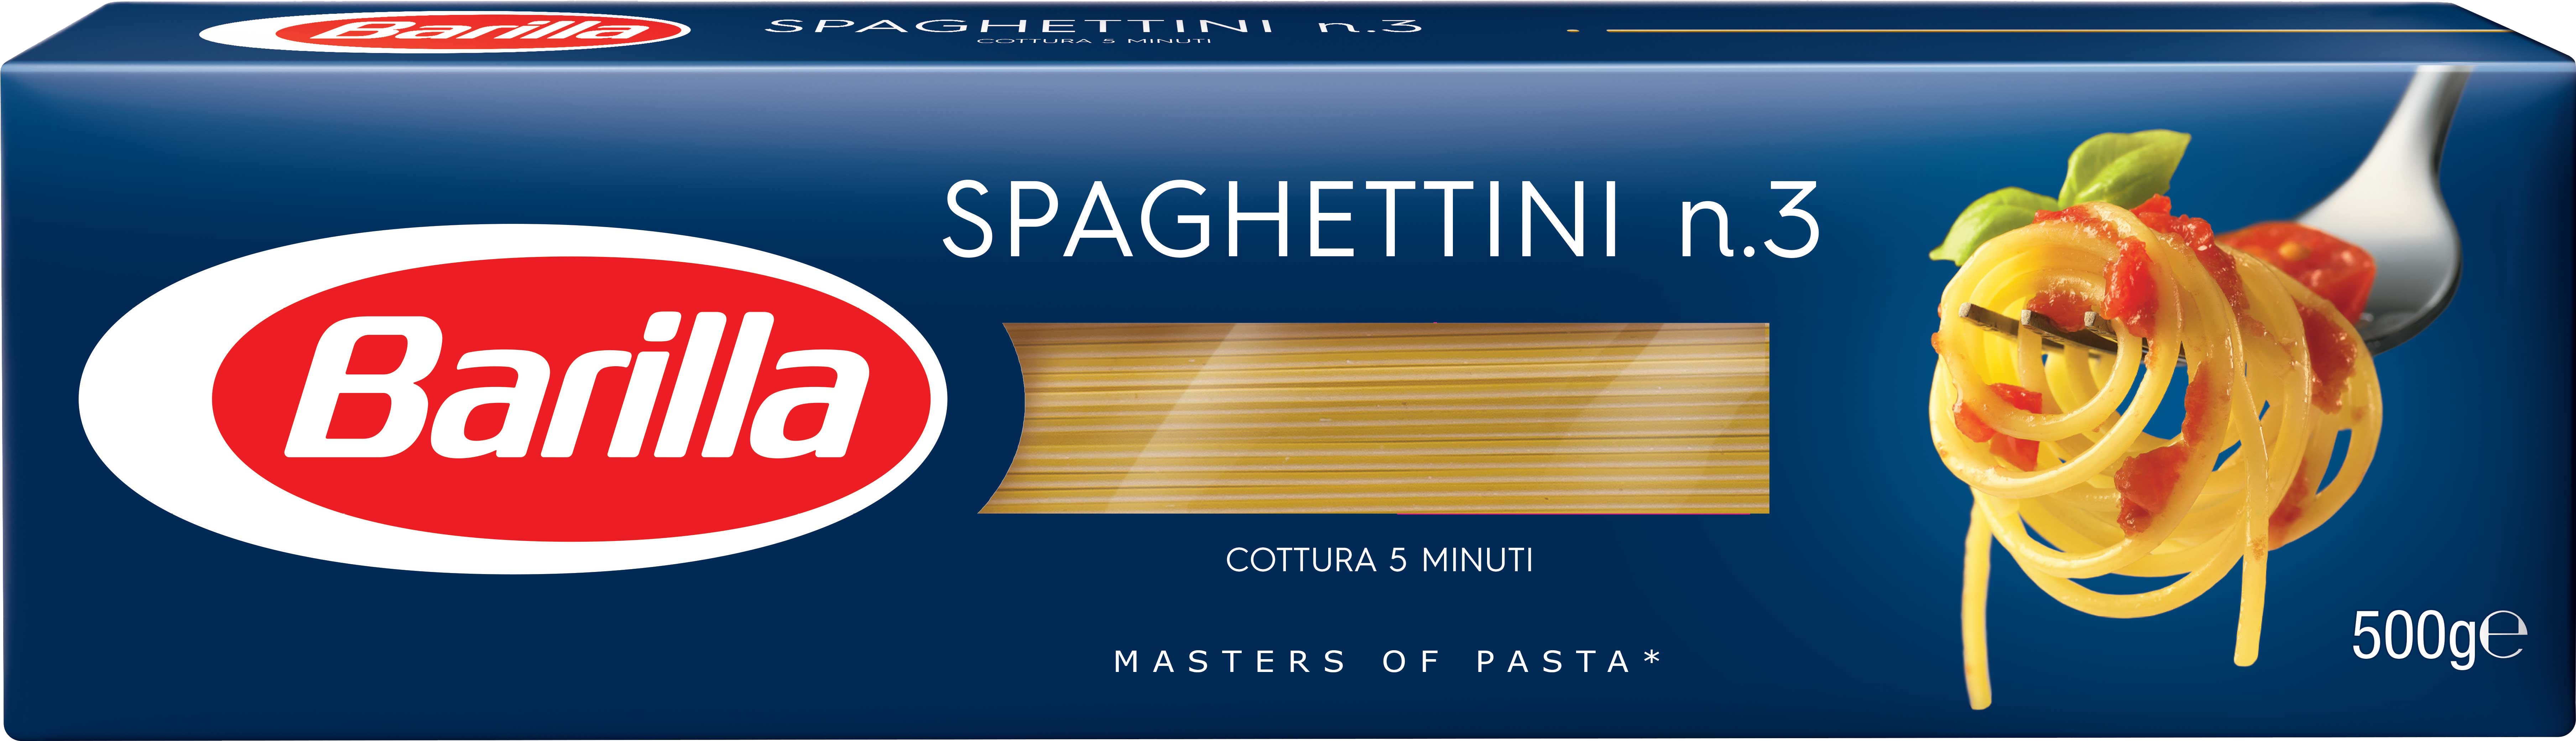 Slika za Testenina spaghettinni 3 Barilla 500g